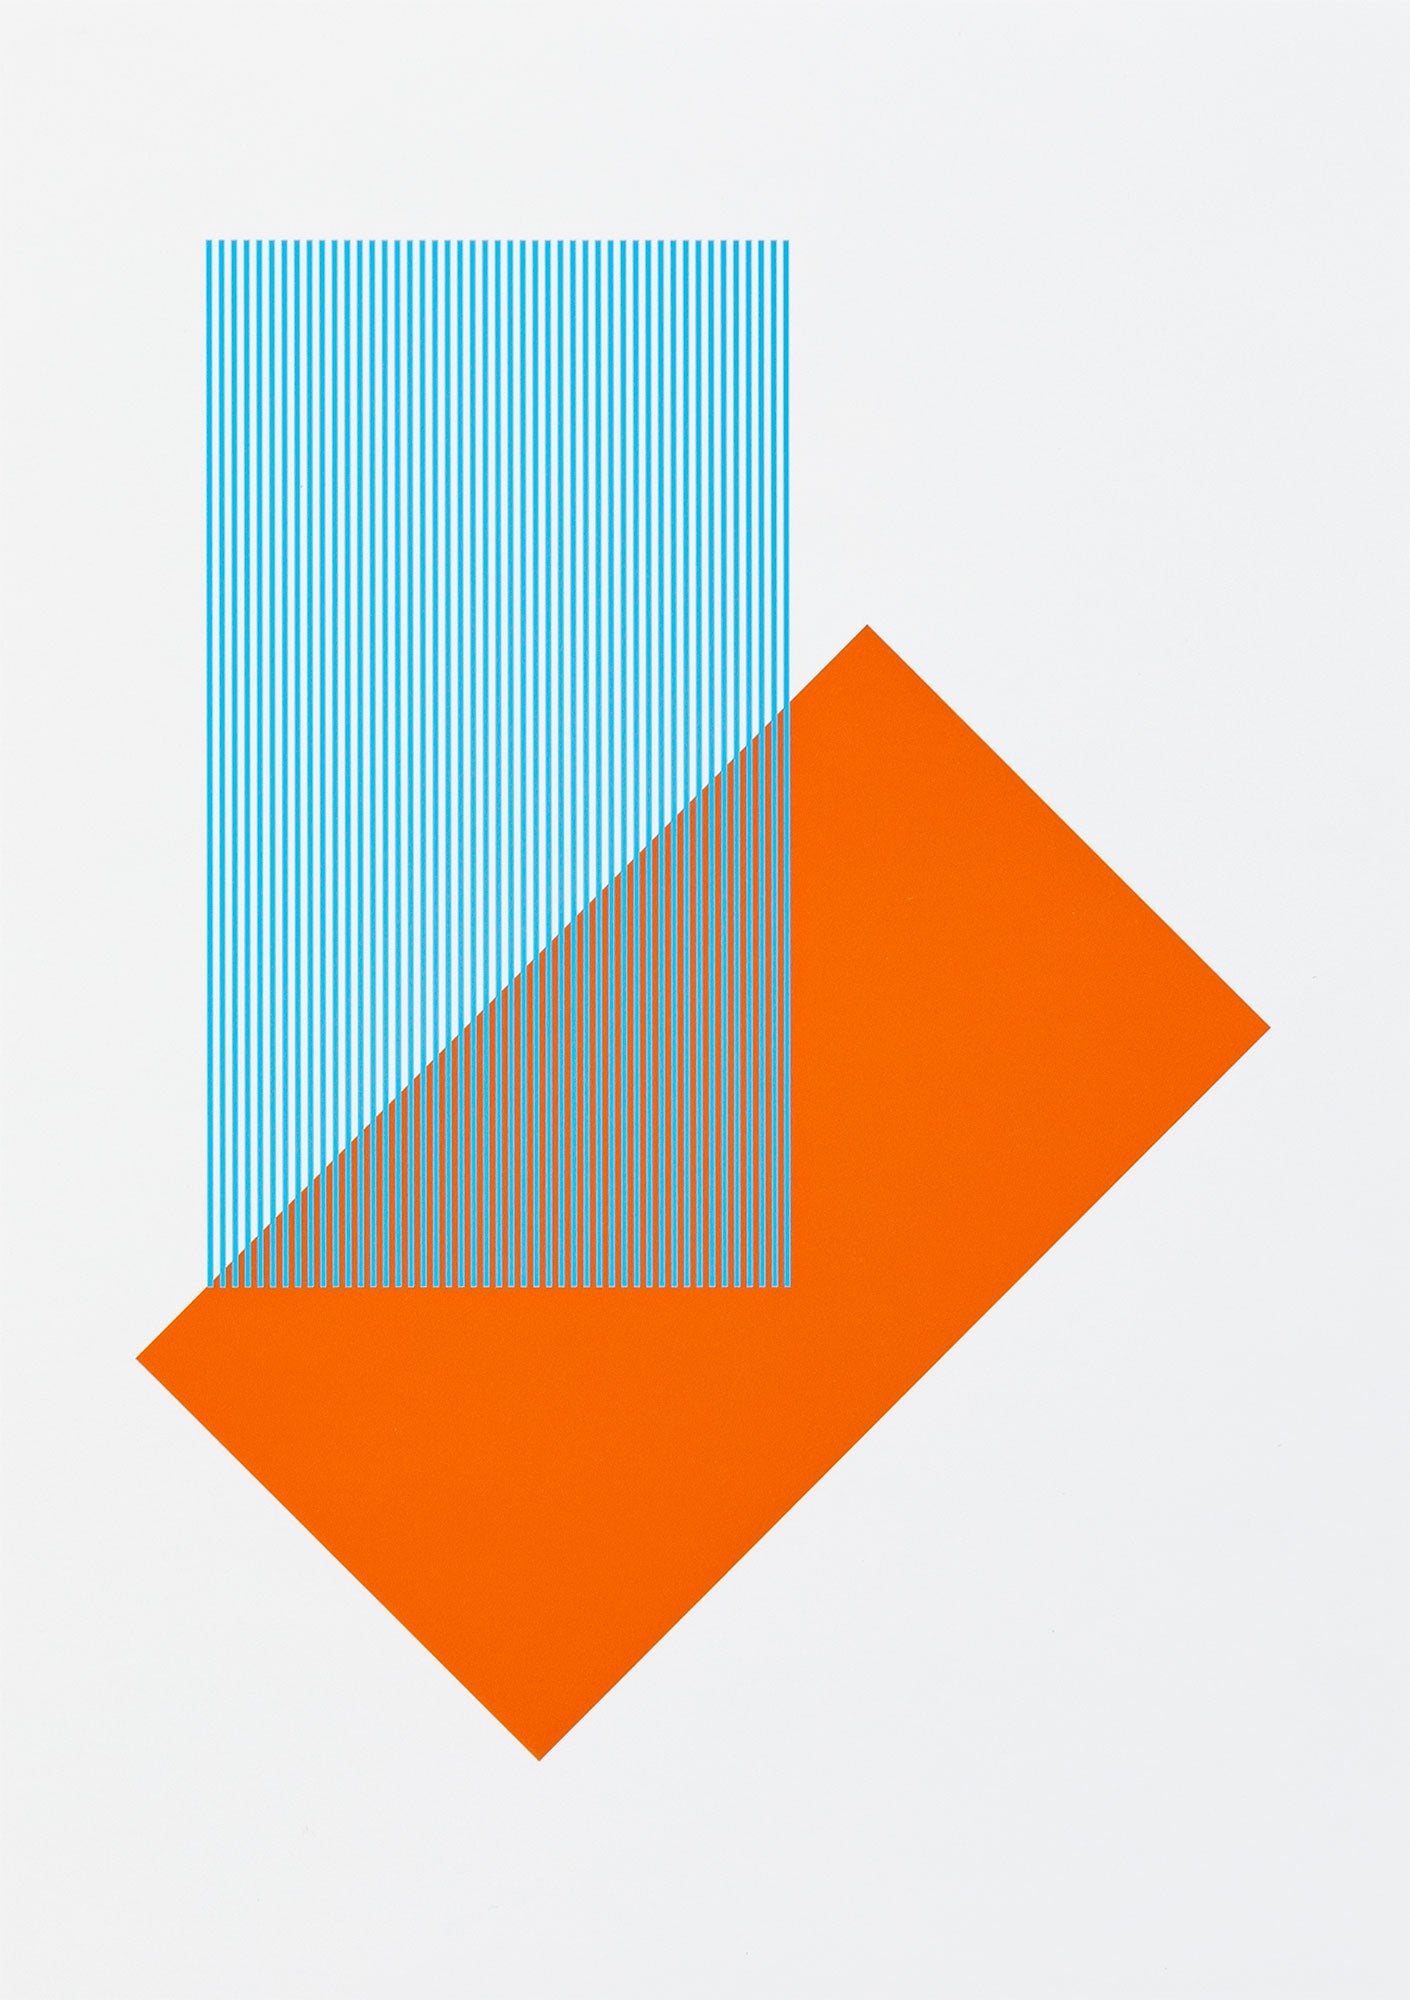 Solids & Strokes – Small – Orange & Light Blue